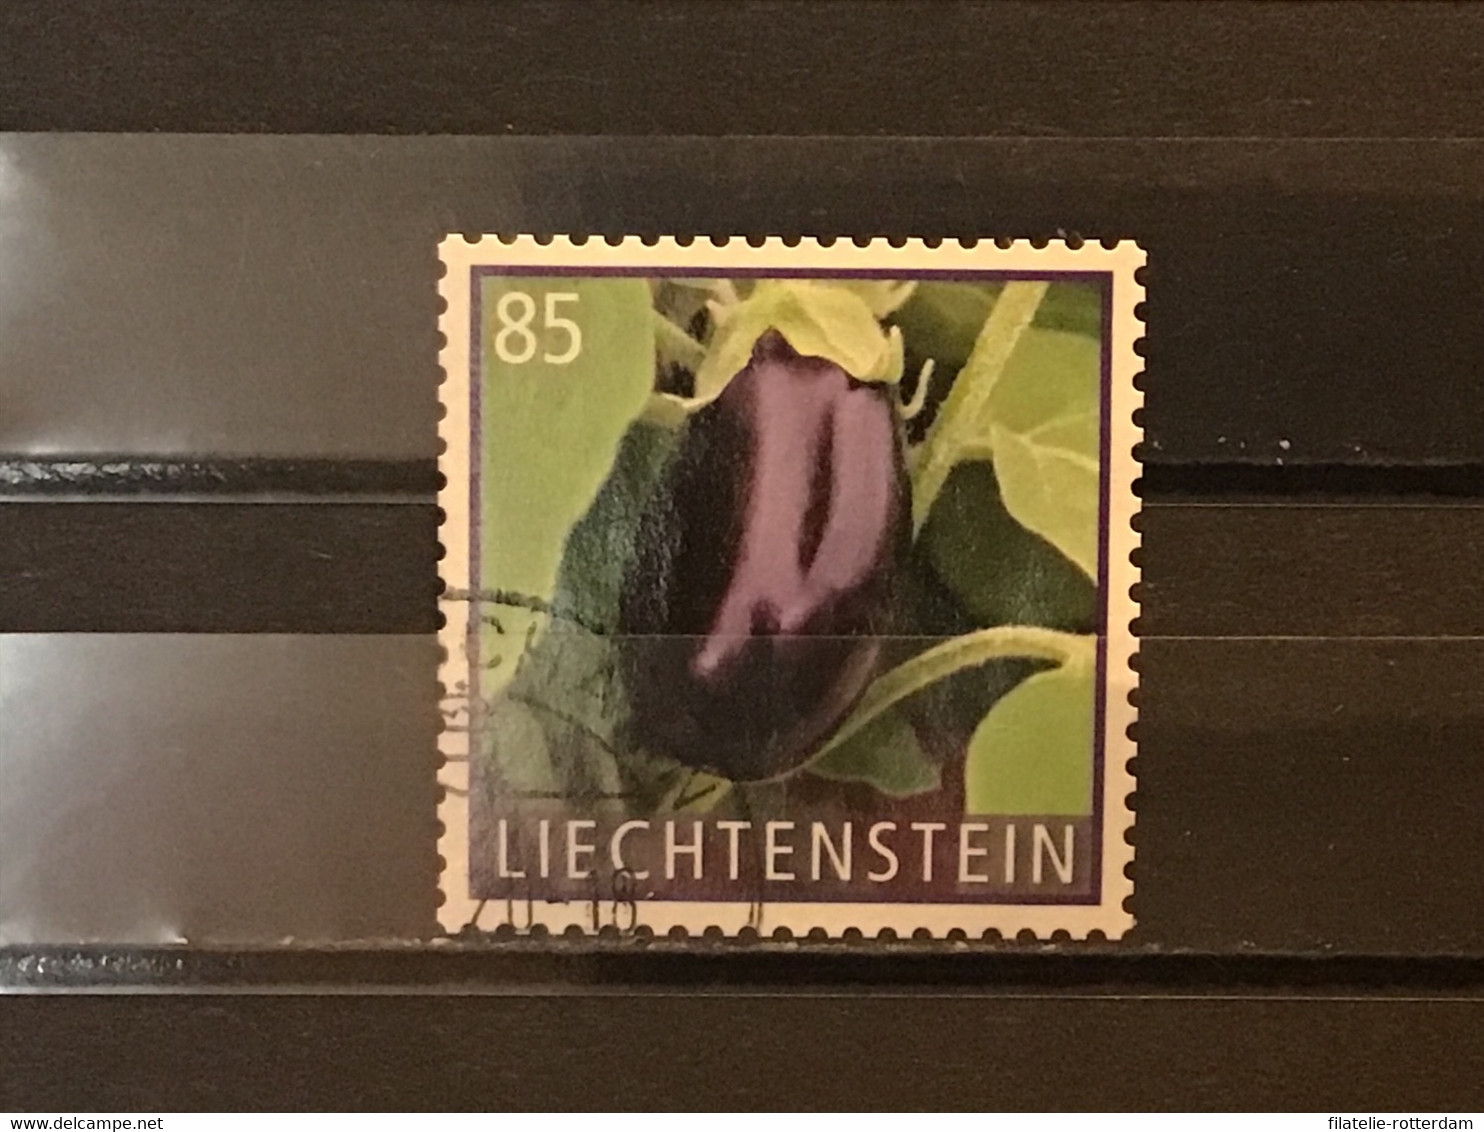 Liechtenstein - Groenten (0.85) 2018 - Usati